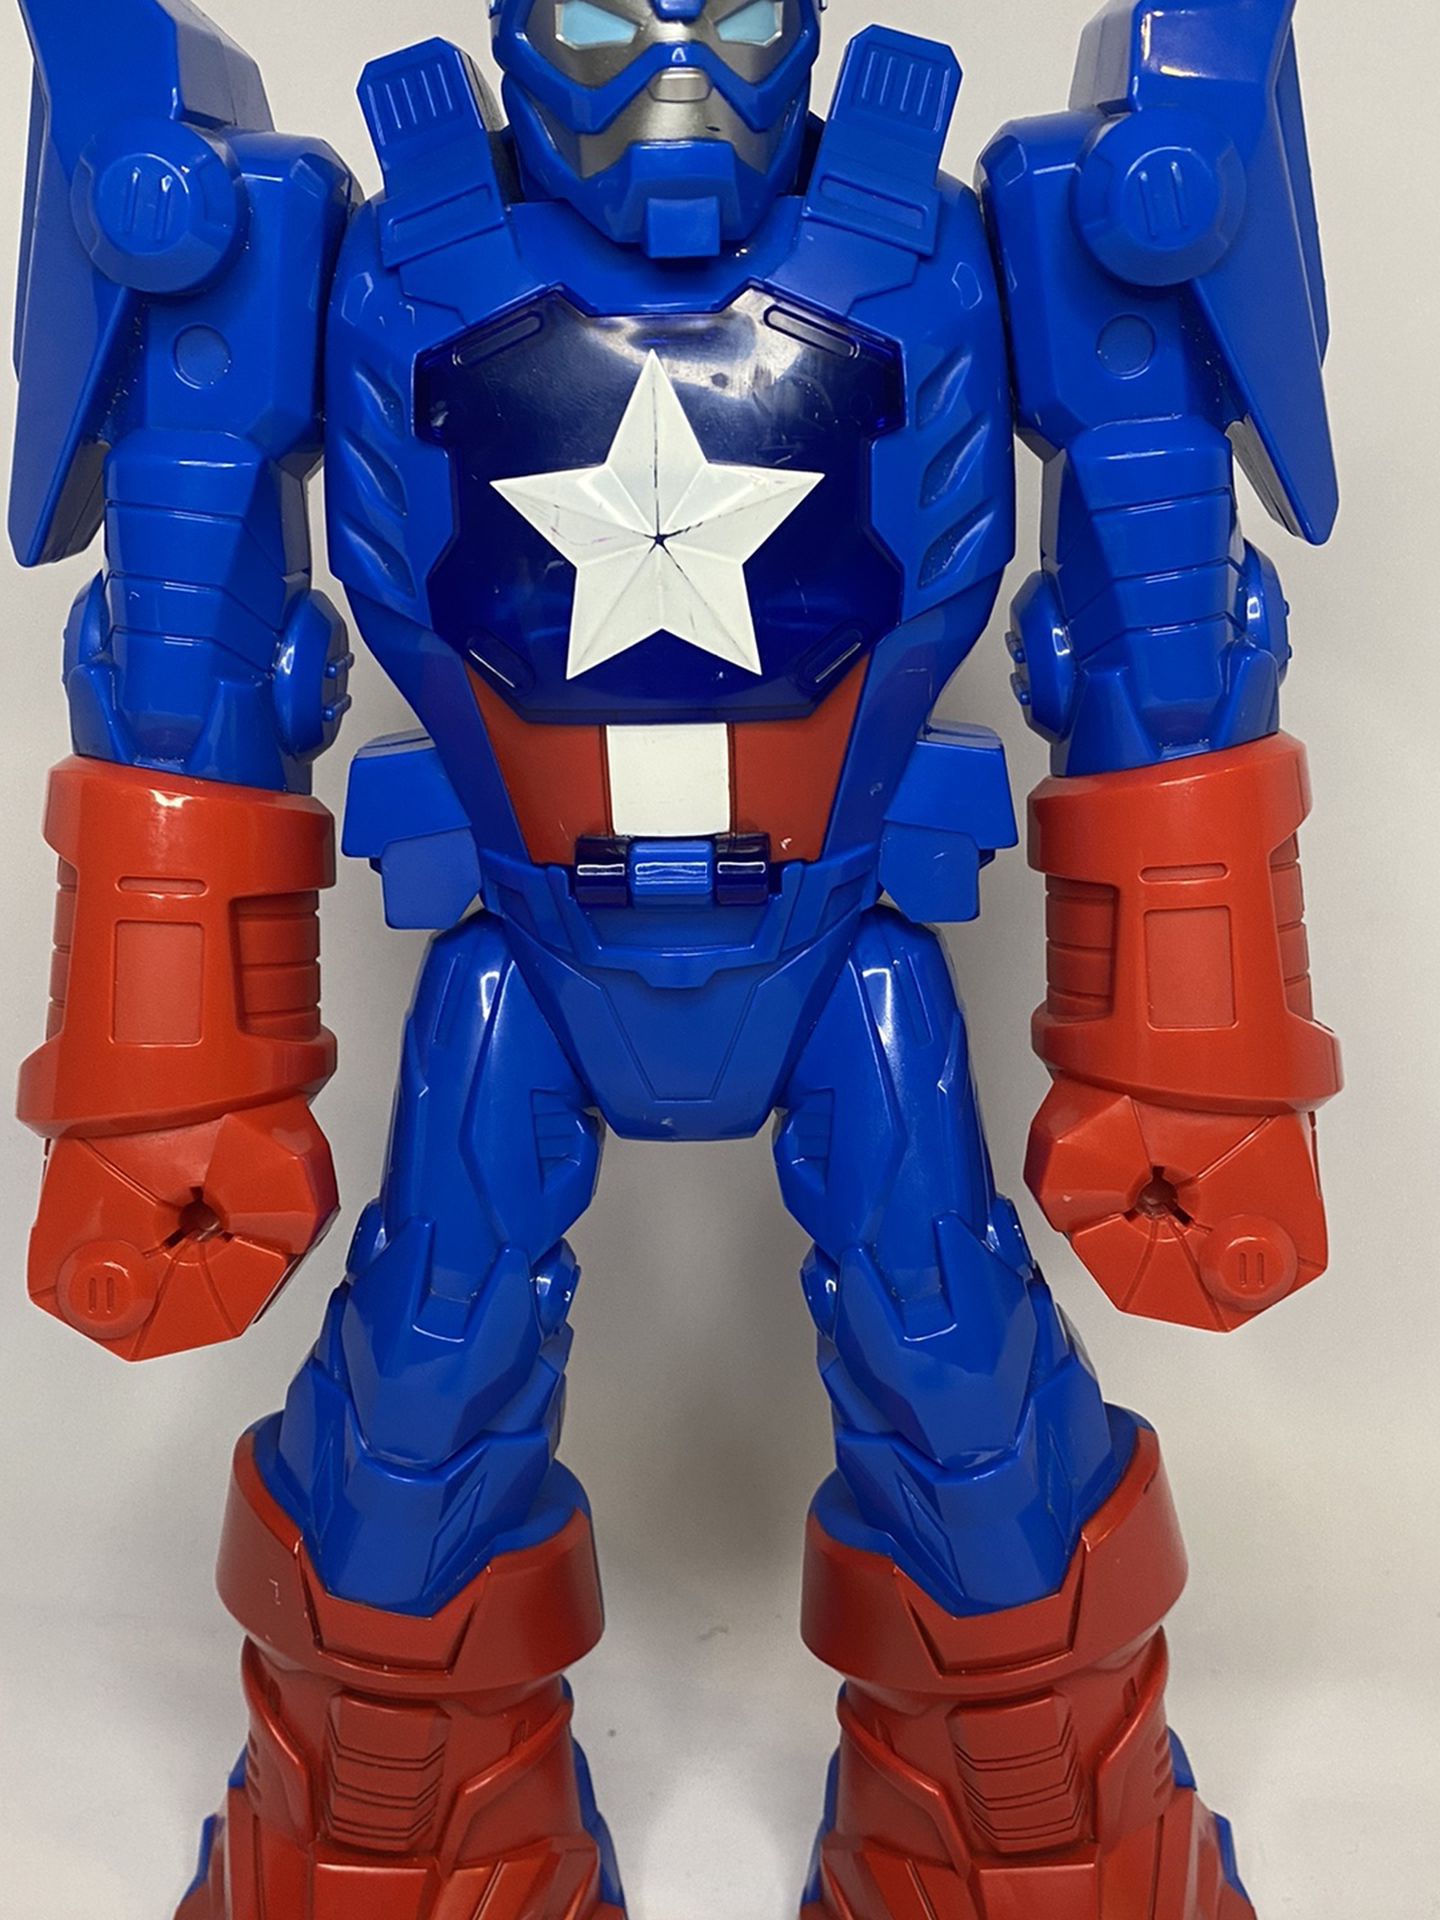 Mech Armor Captain America Robot Exoskeleton Marvel Playskool Heroes Super Adven